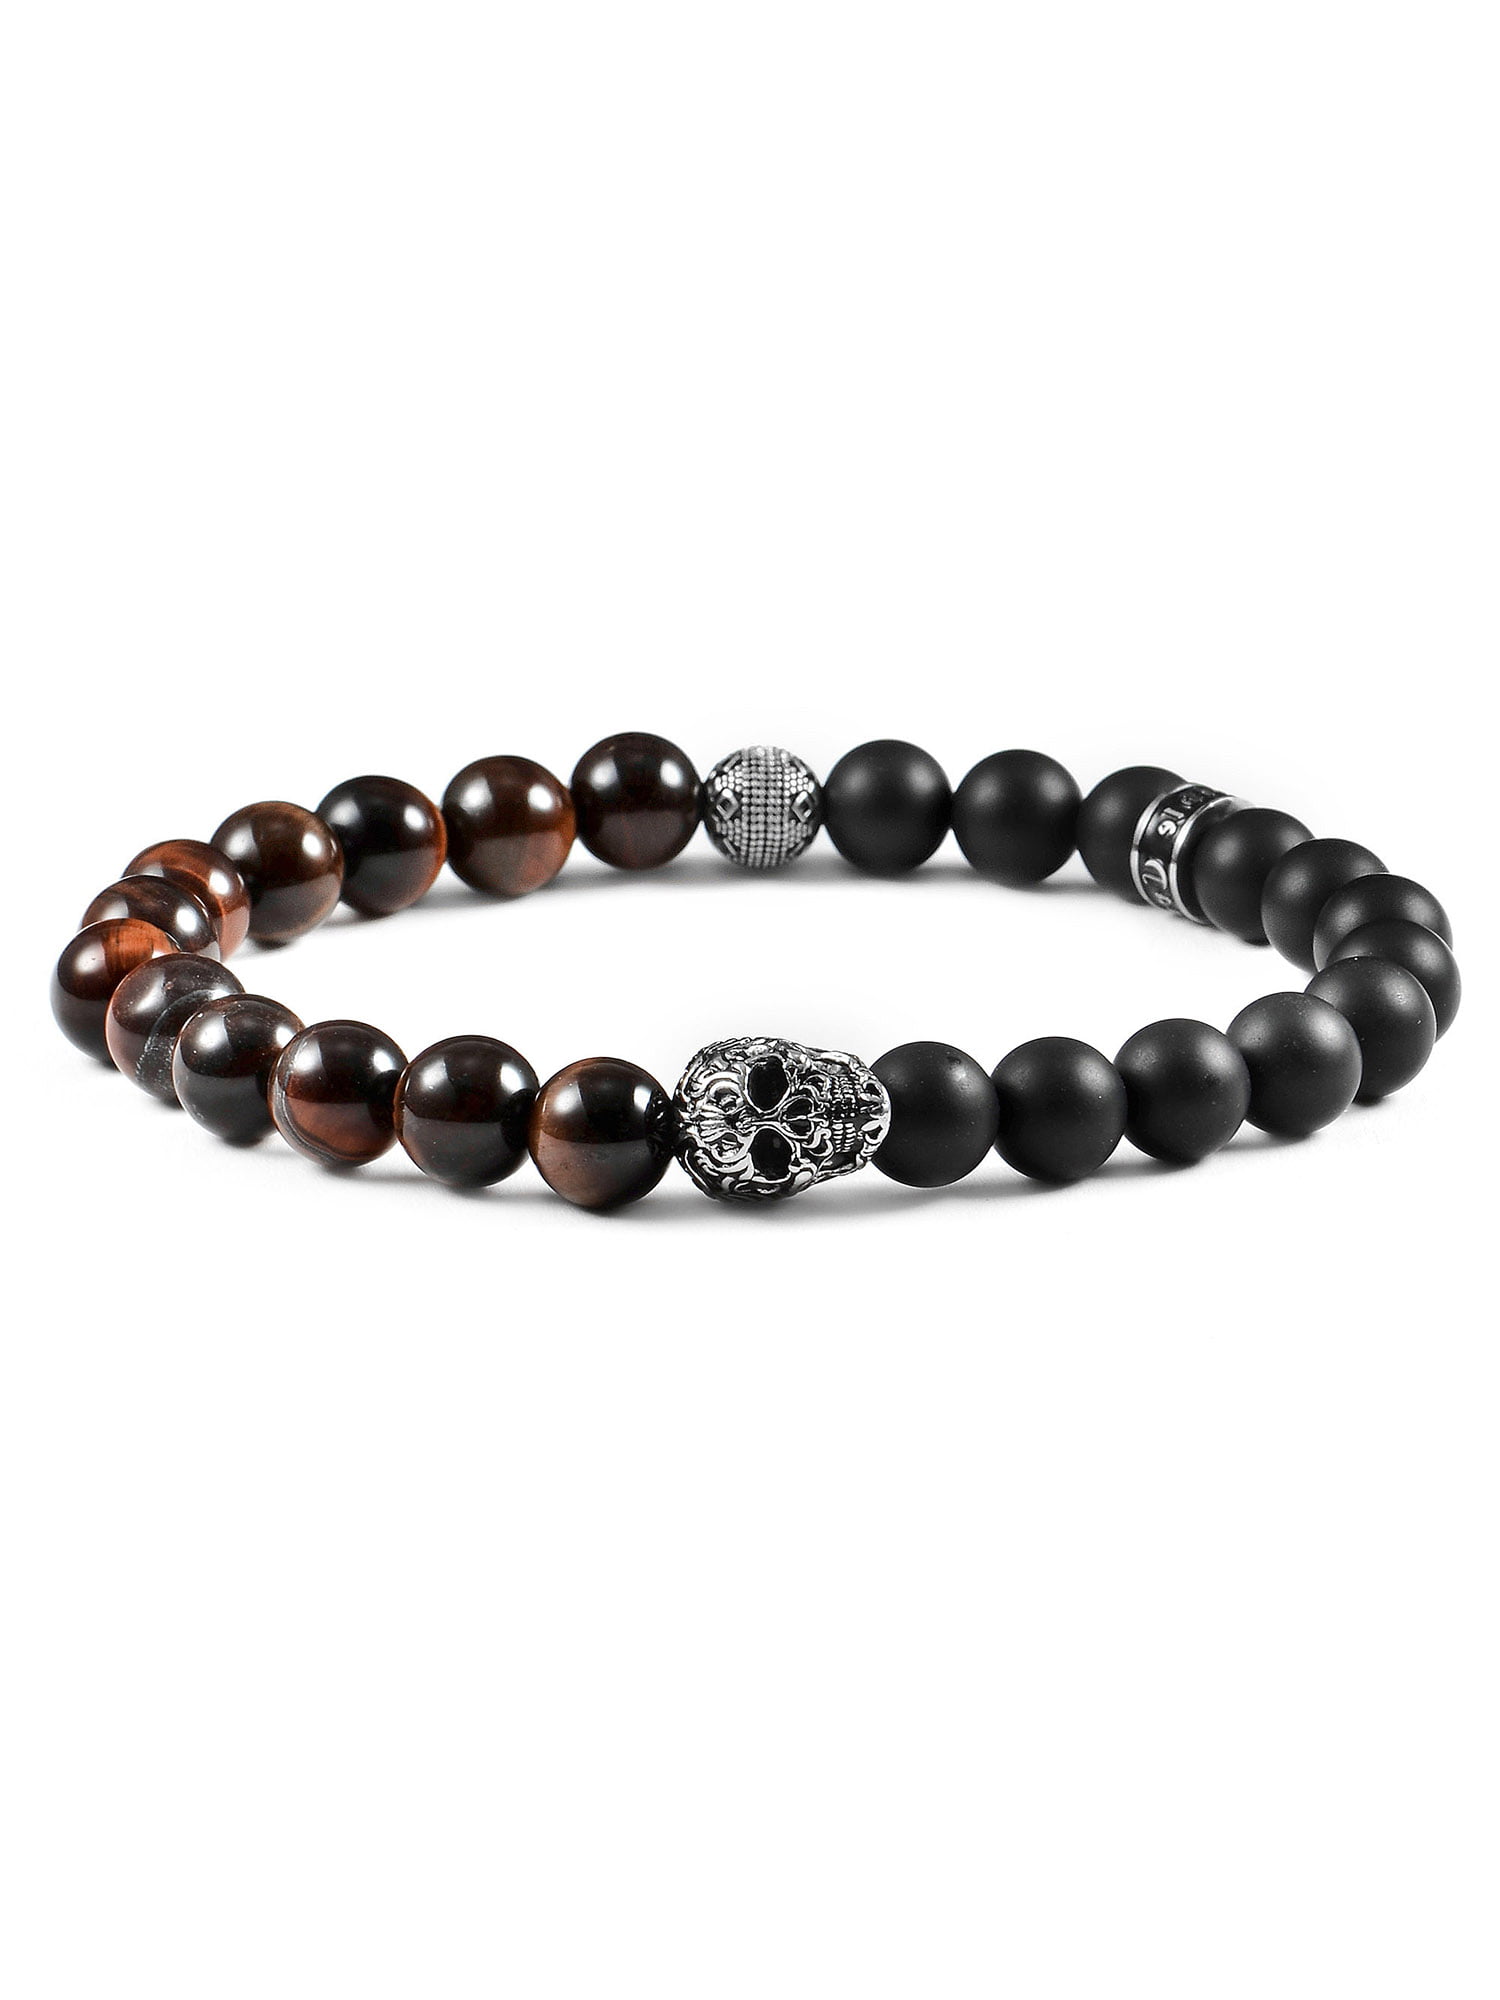 Handmade Natural Bead Bracelet For Men Tiger Eye Black White Onyx Stainless Steel Chain Choose Beads 